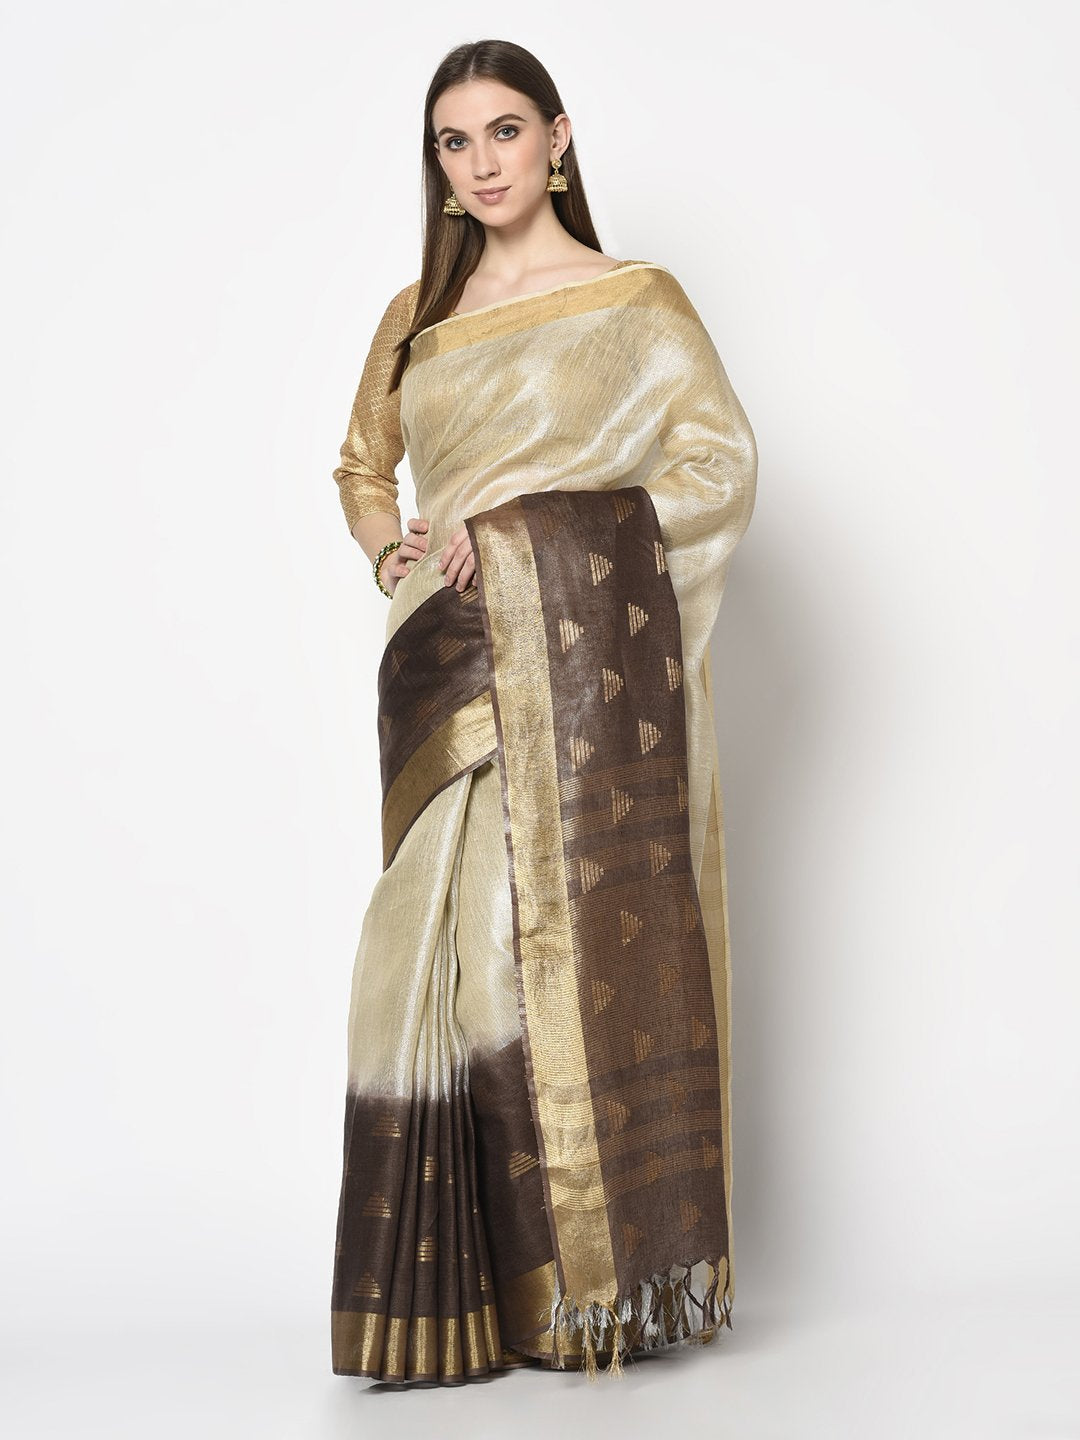 Handloom Saree In Cream&Brown Color